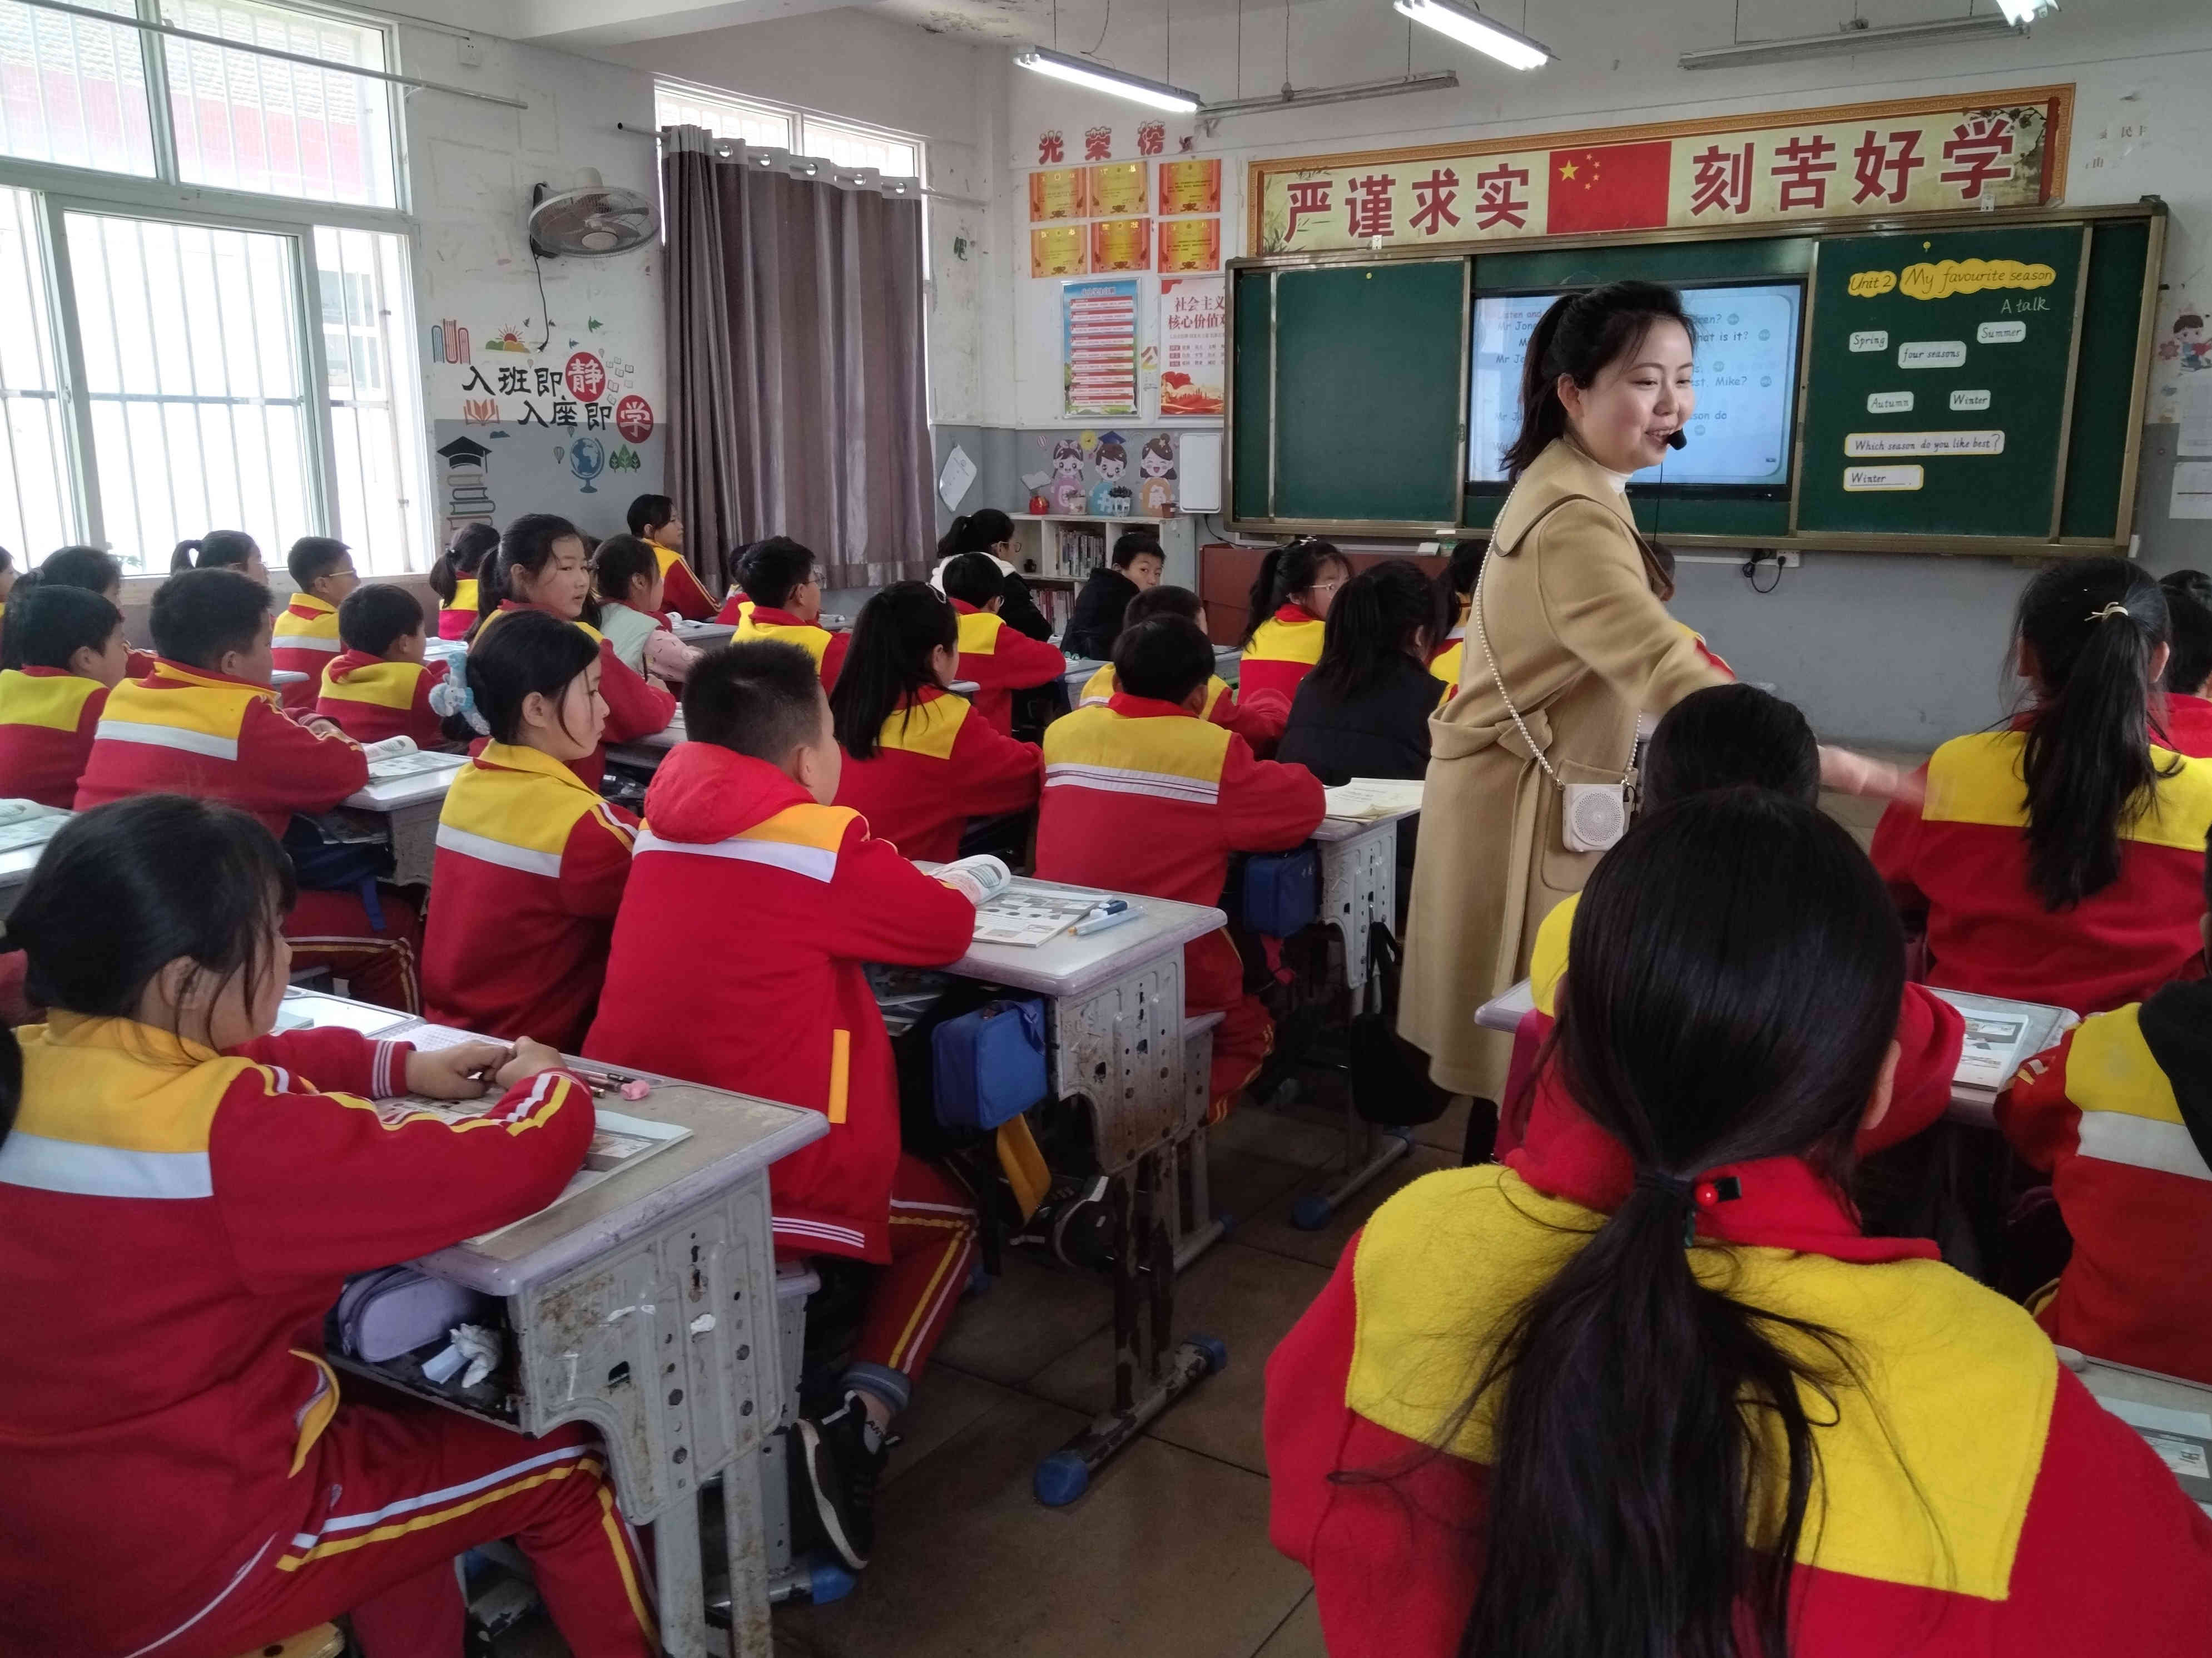 汉阴县“城乡教师学习共同体——名师引领行动”送教团队走进漩涡镇中心小学